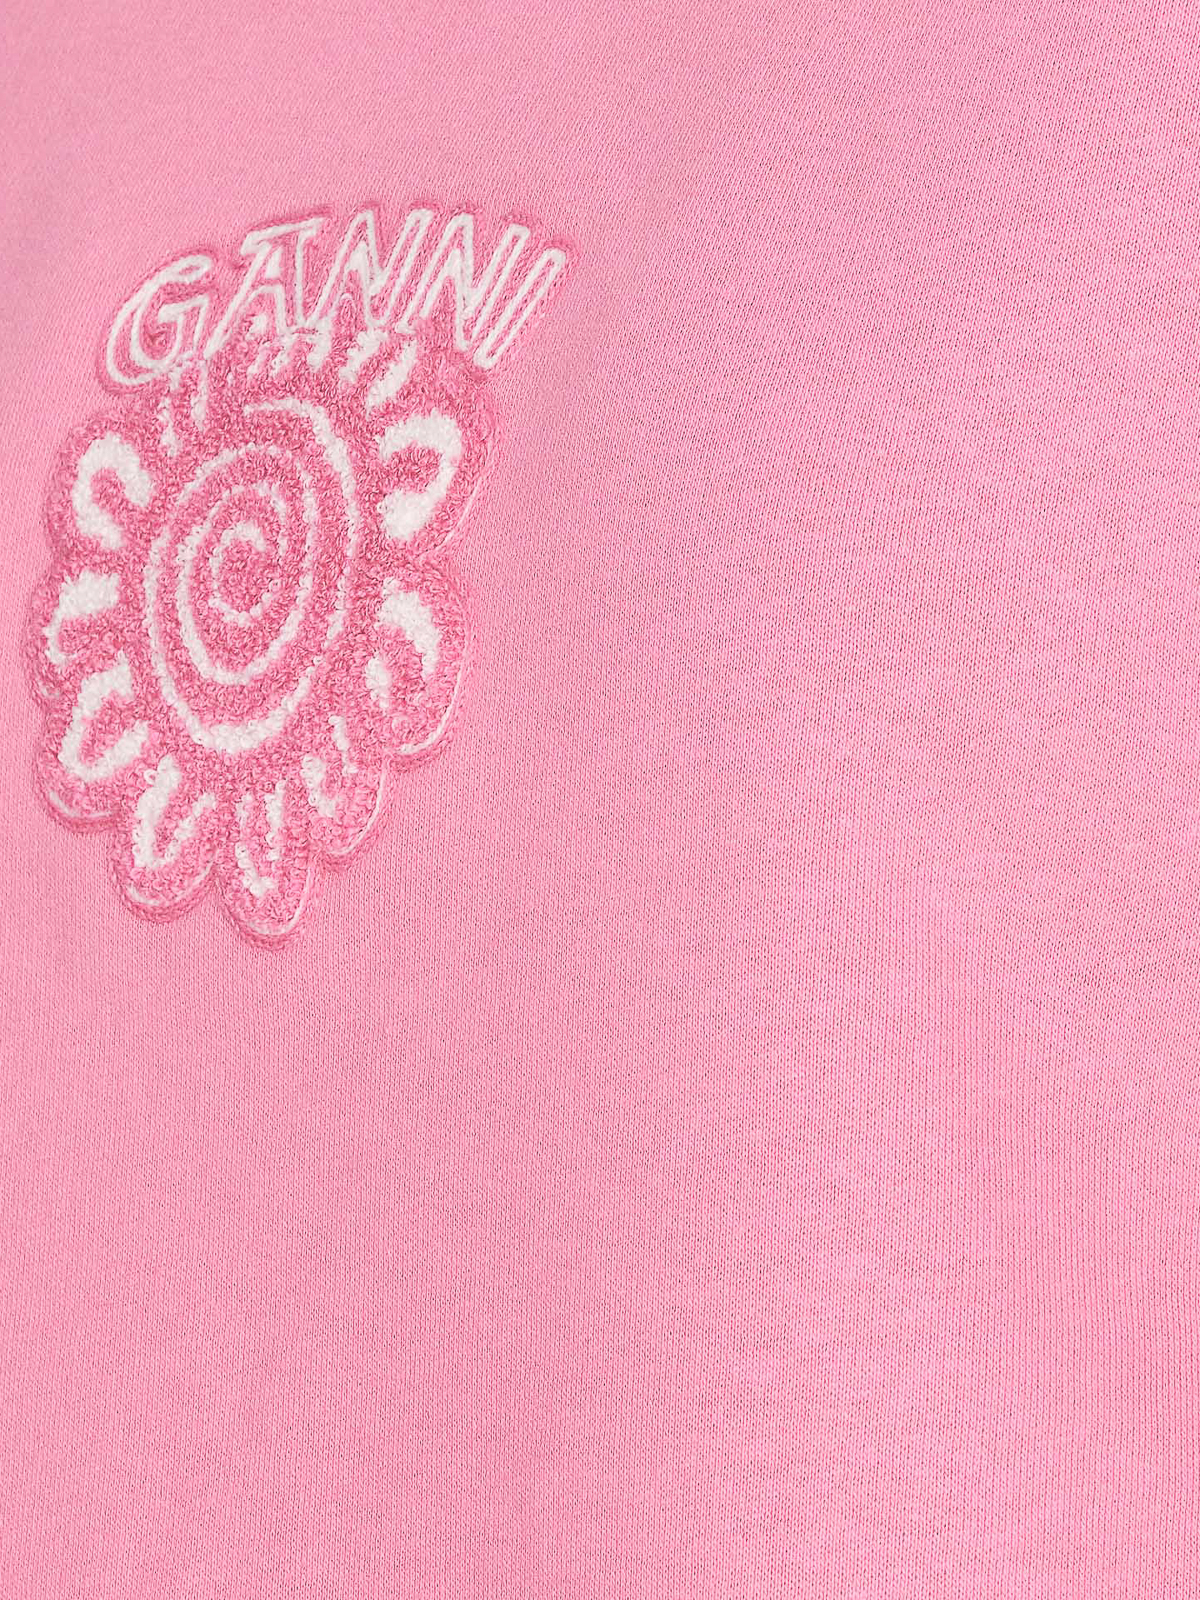 Shop Ganni Sudadera - Rosado In Pink